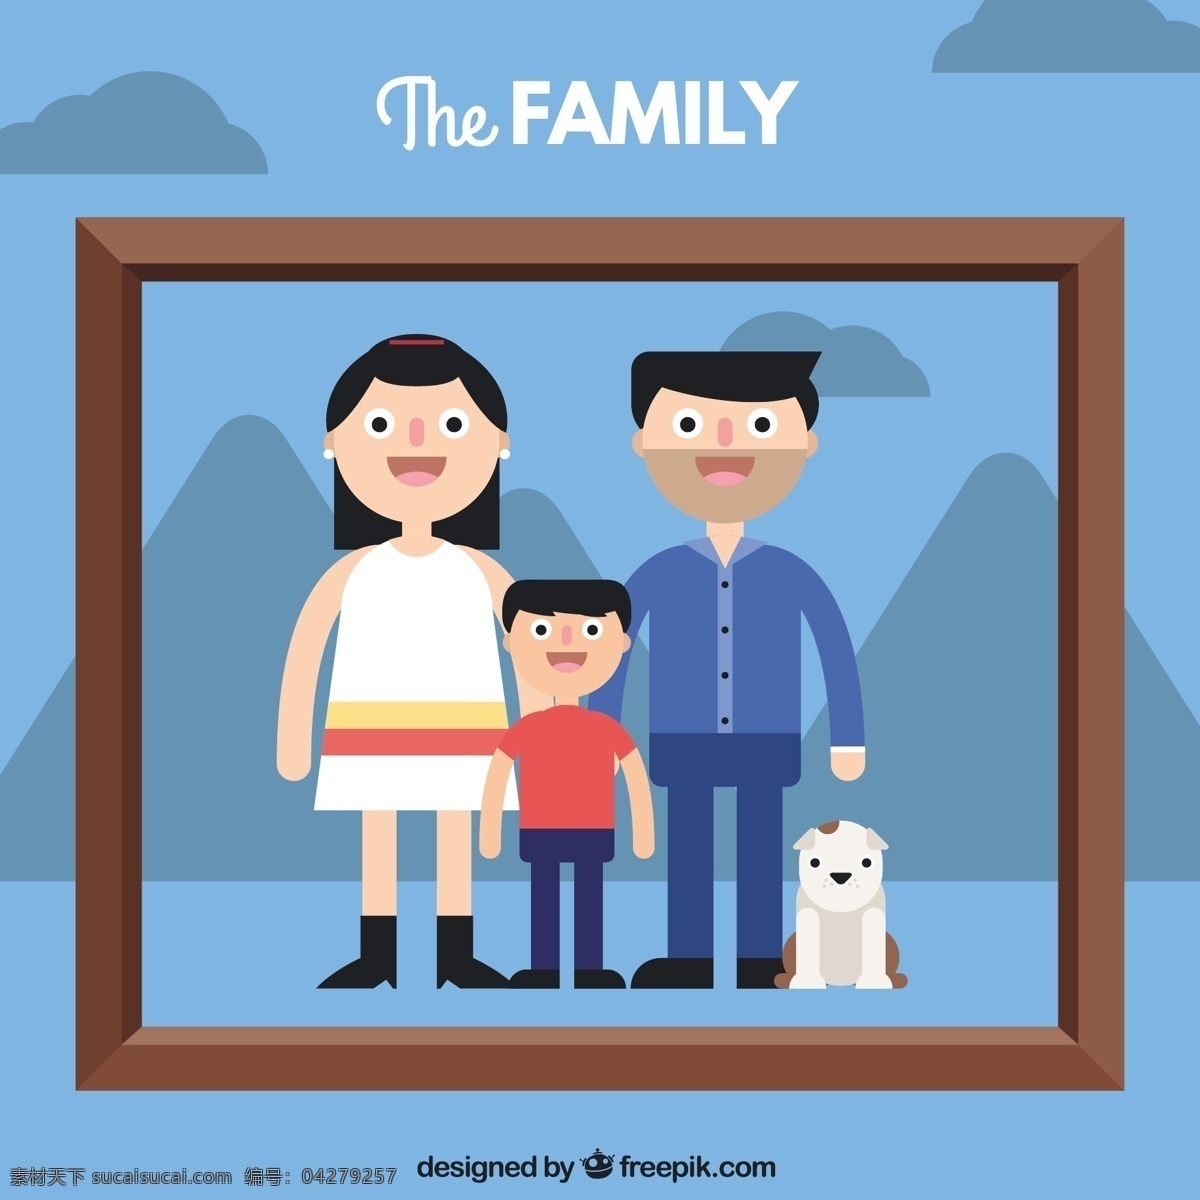 扁家人的肖像 相框 人 爱 家庭 照片 平面 肖像 父母 关系 知情 青色 天蓝色